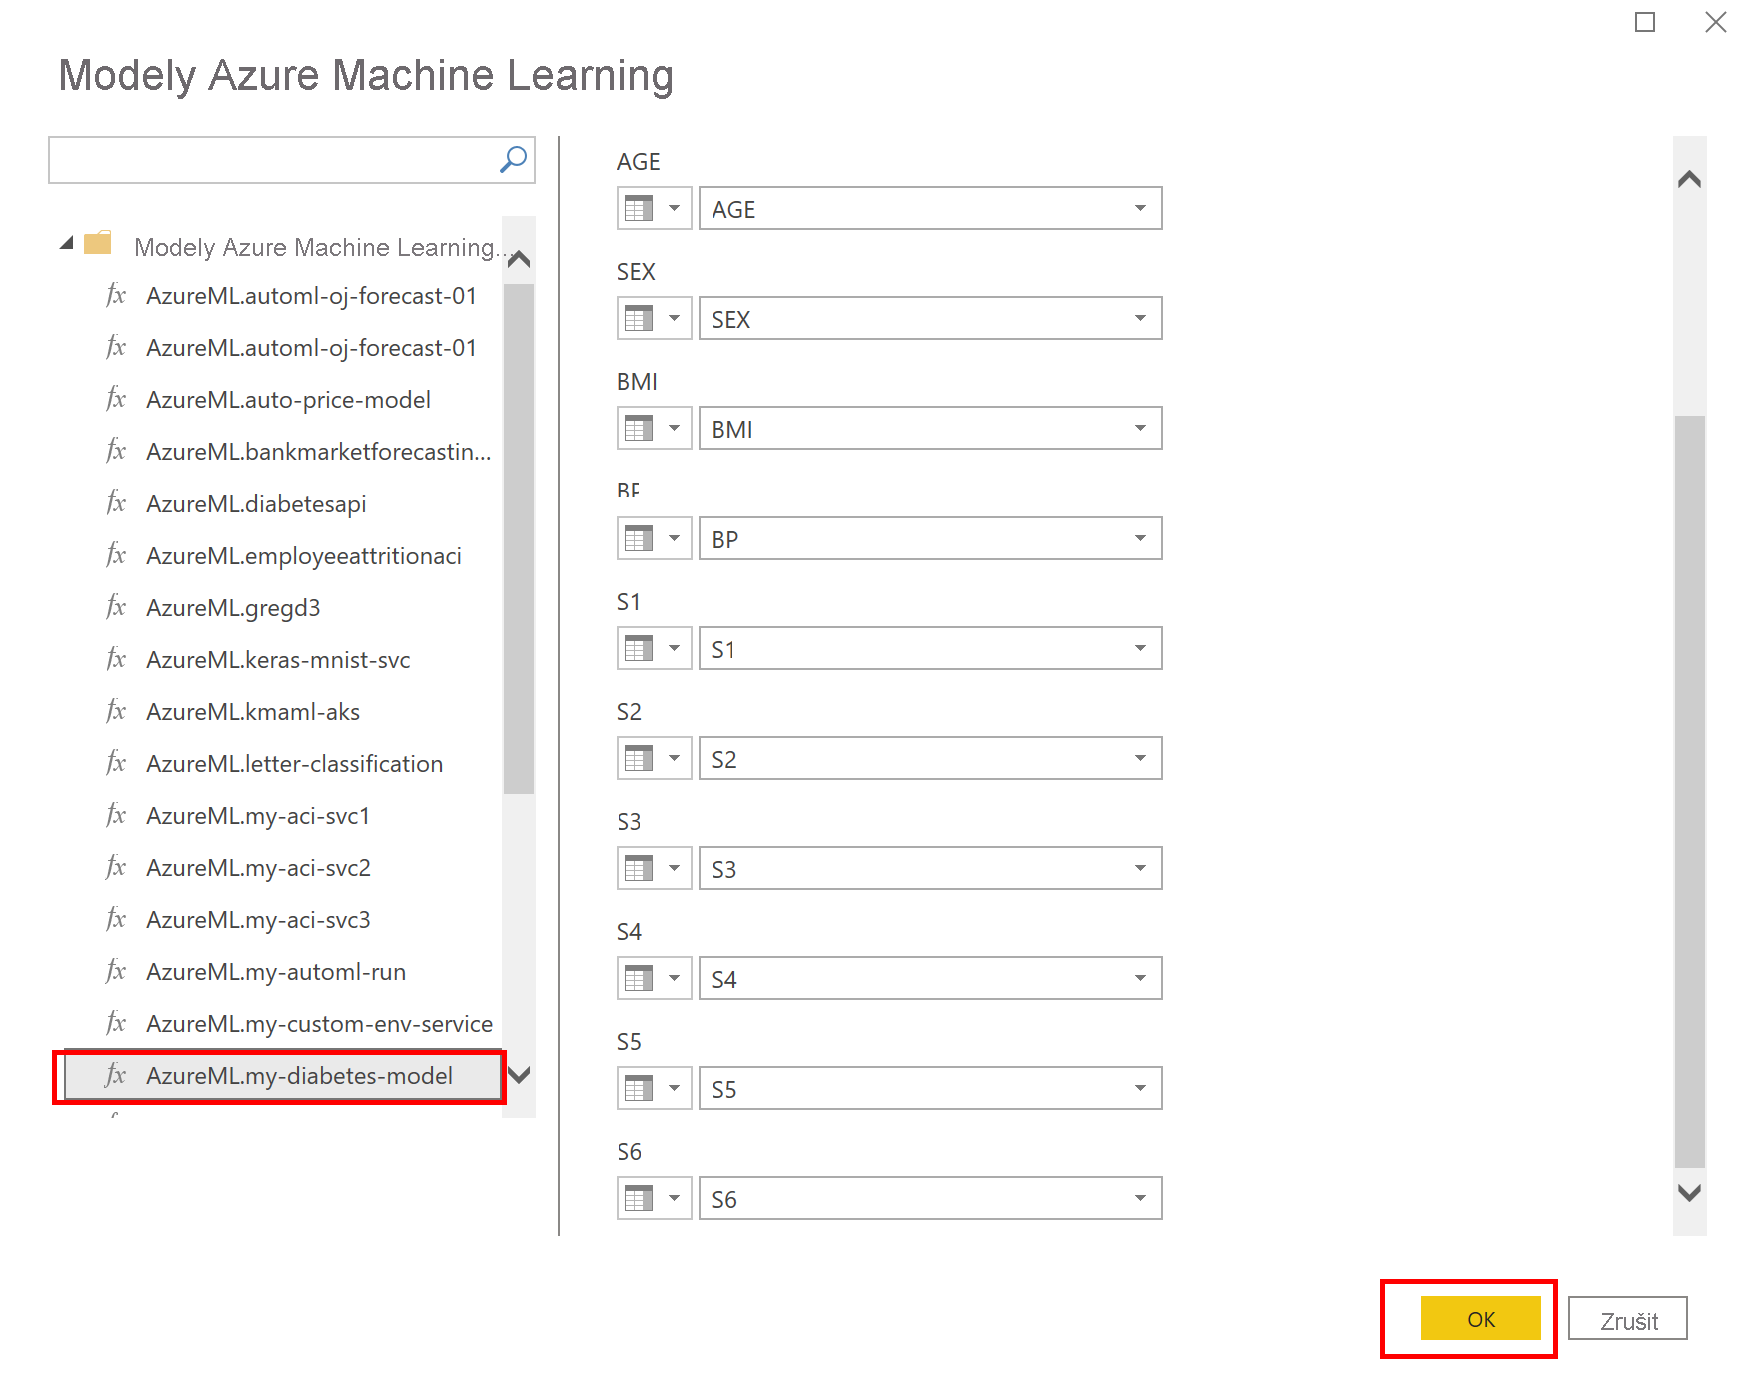 Snímek obrazovky znázorňující modely Azure Machine Learning